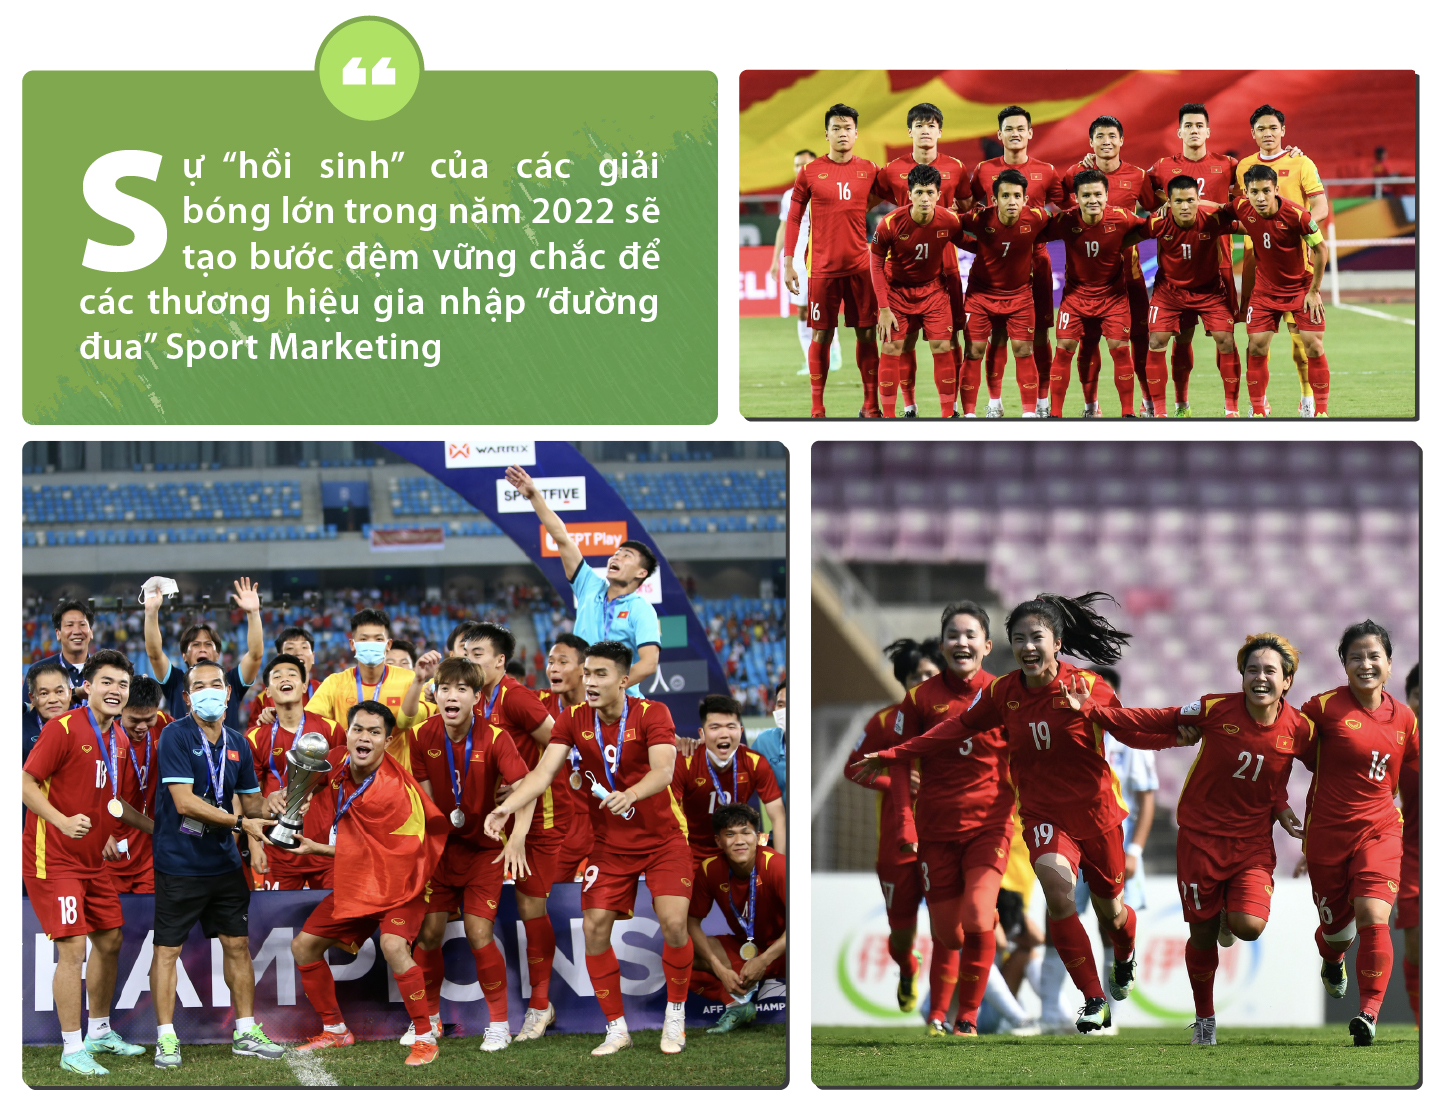 Những thắng lợi của đội tuyển Việt Nam hứa hẹn sẽ khiến thị trường Sport Marketing “bùng nổ” trong năm 2022